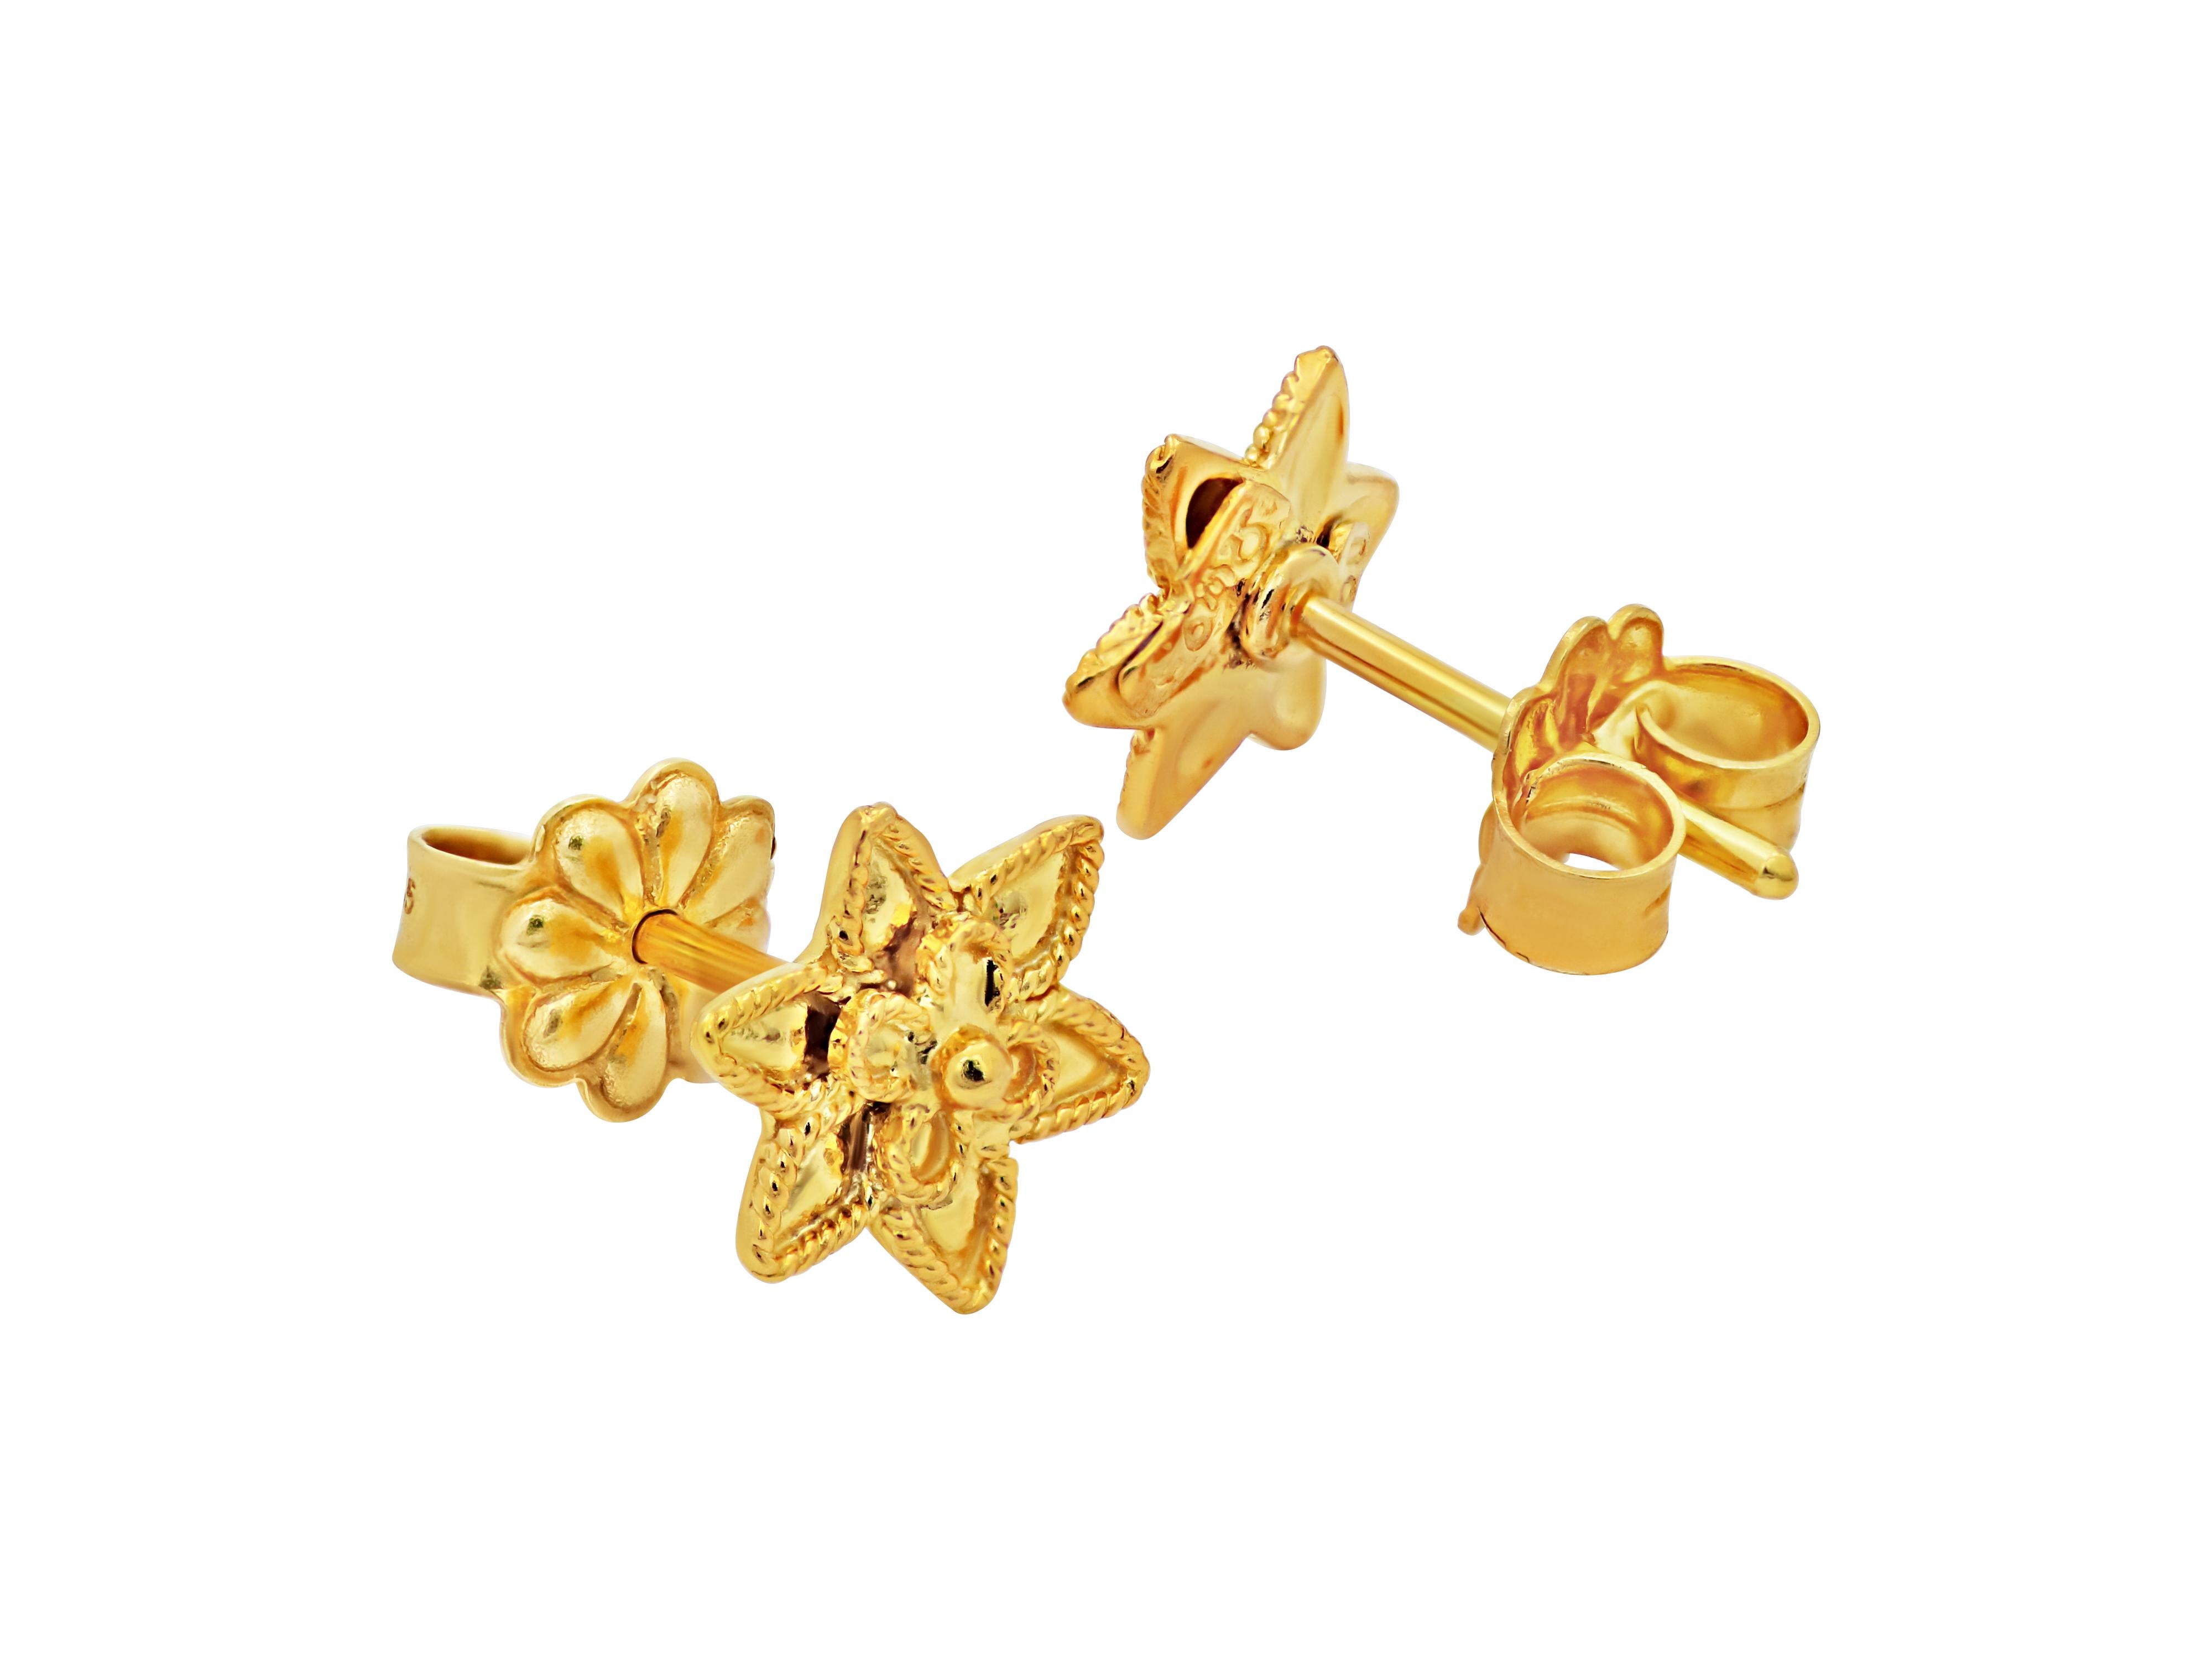 Boucles d'oreilles de petite taille en forme d'étoile avec un design filigrane serti d'or jaune 18k. Chaque boucle d'oreille est ornée d'une petite marguerite en son centre. Un ouvrage néoclassique de style muséal qui témoigne de la classe, du goût